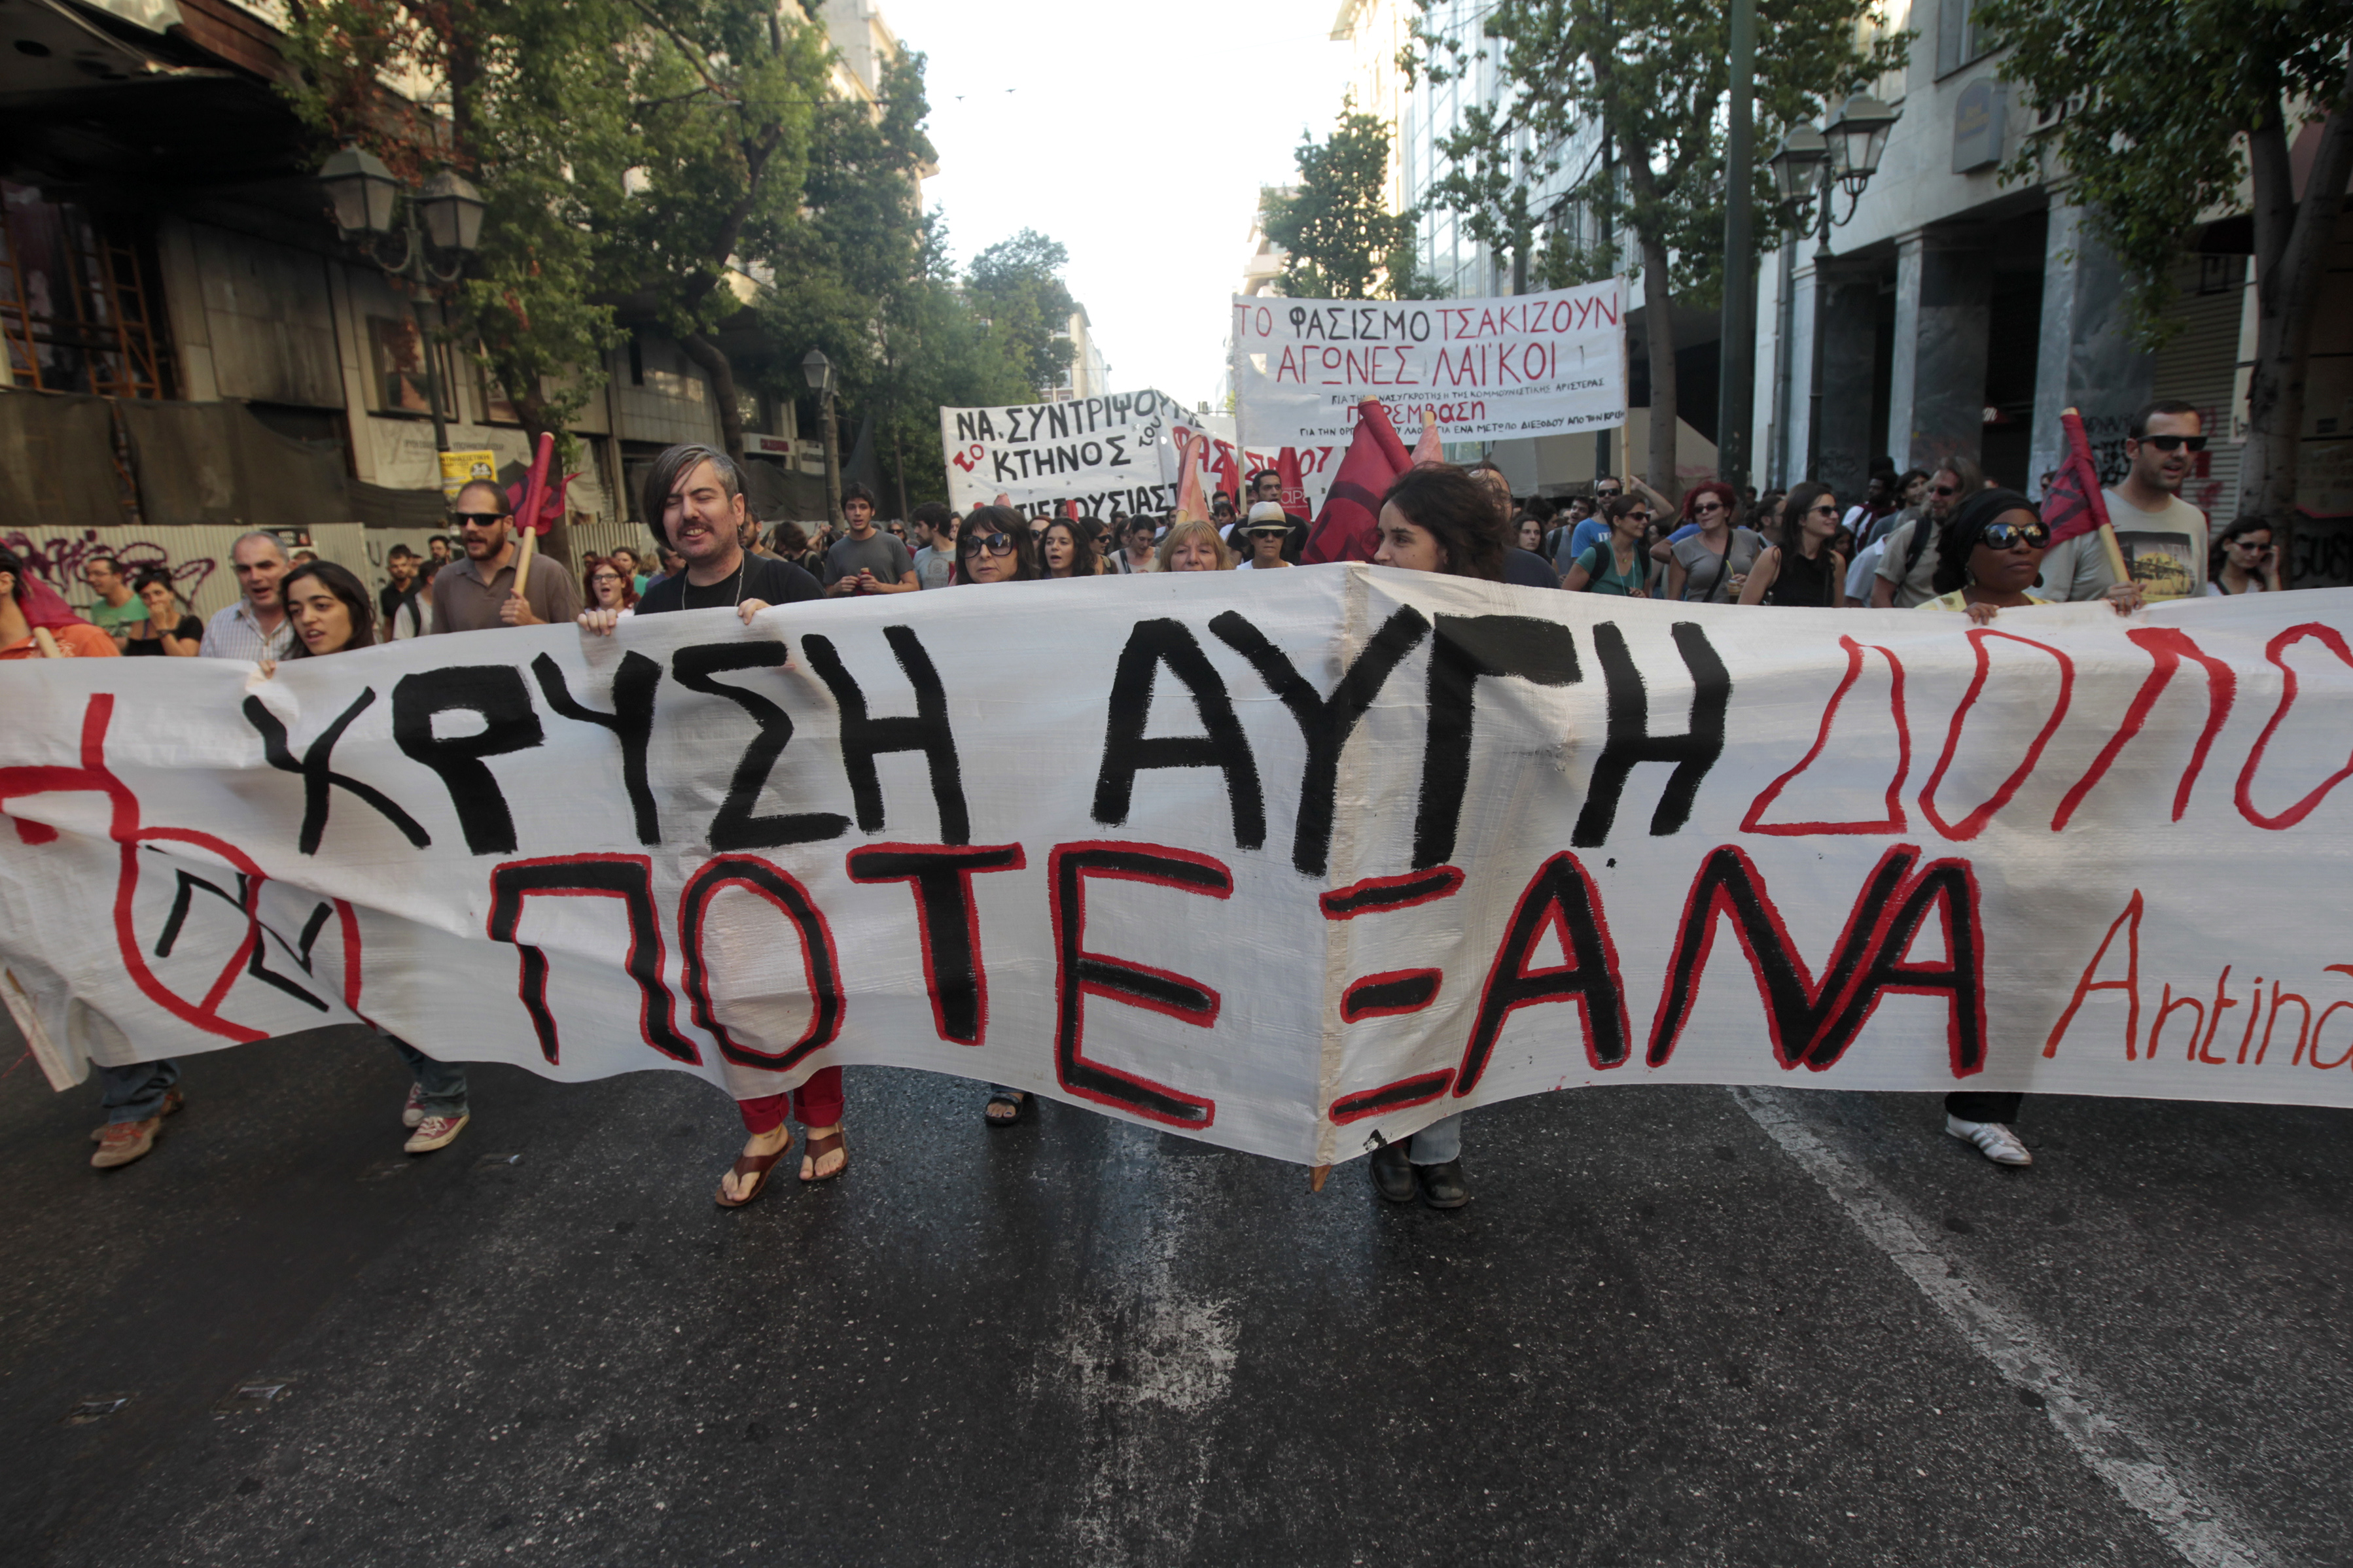 ΣΥΡΙΖΑ:Διάθεση συμπαράταξης κατά ΧΑ με κόμματα του συνταγματικού τόξου